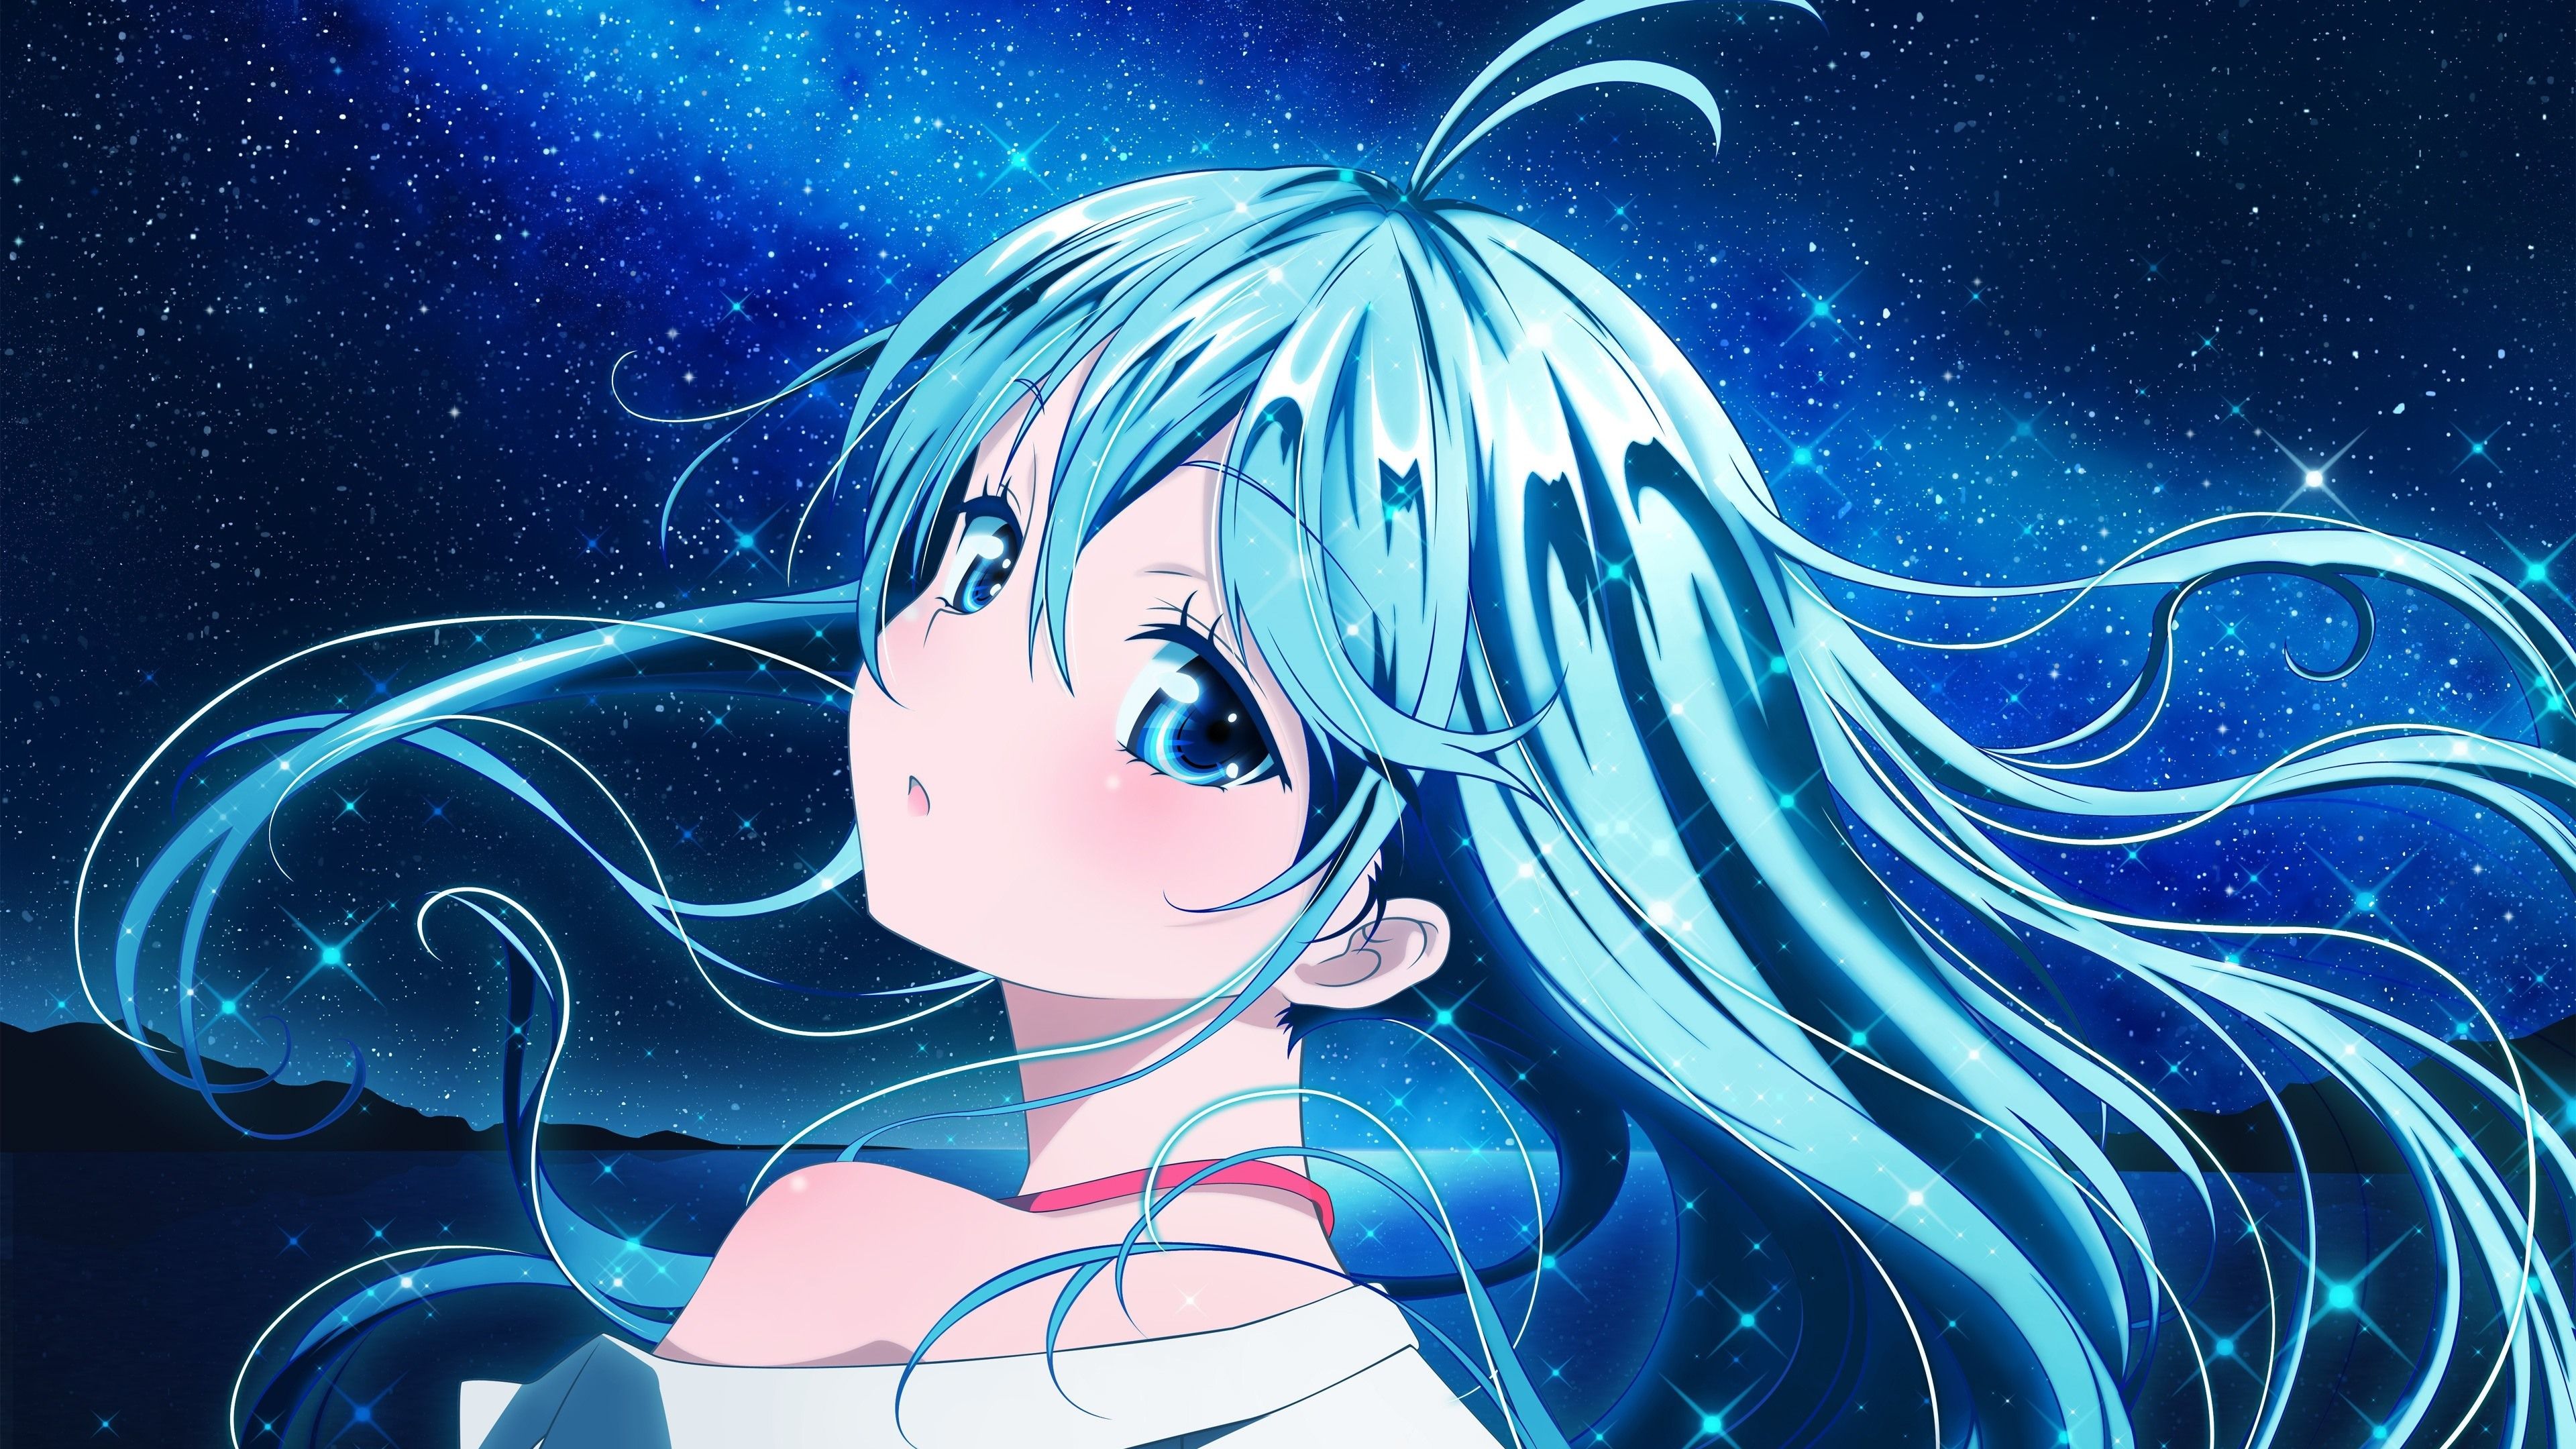 Wallpaper Blue hair anime girl, starry, shine 3840x2160 UHD 4K